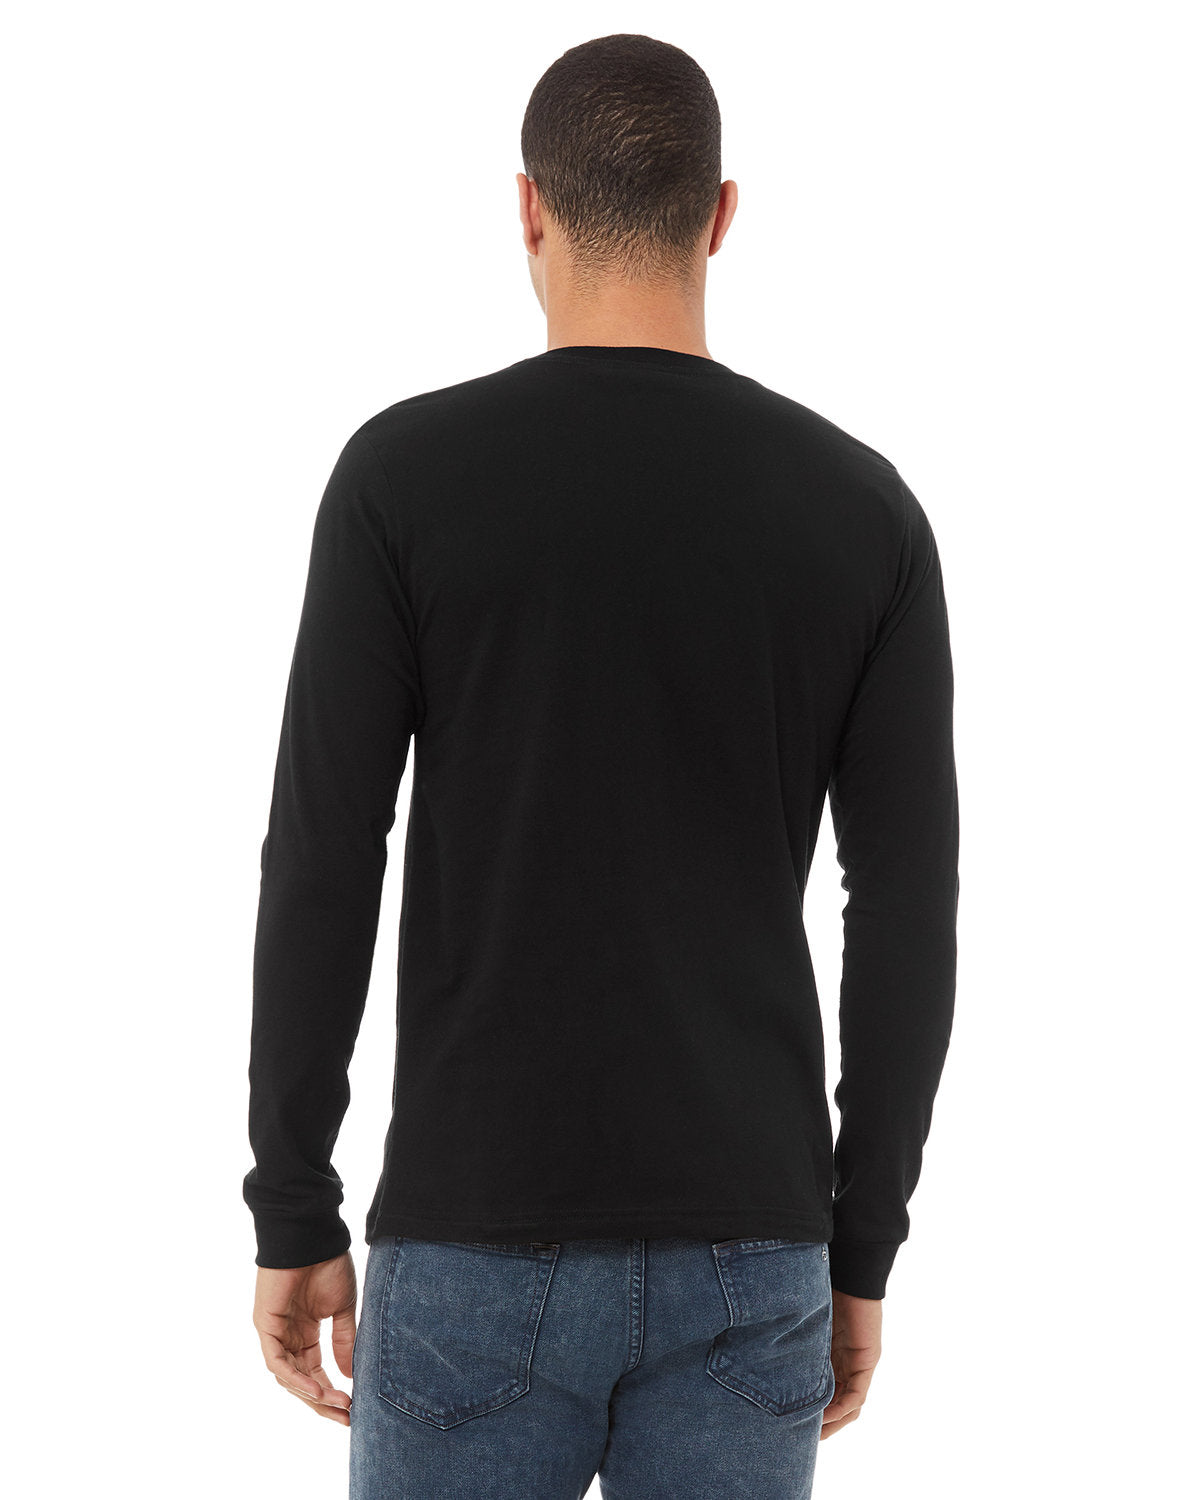 Bella+Canvas® Unisex Jersey Long-Sleeve T-Shirt